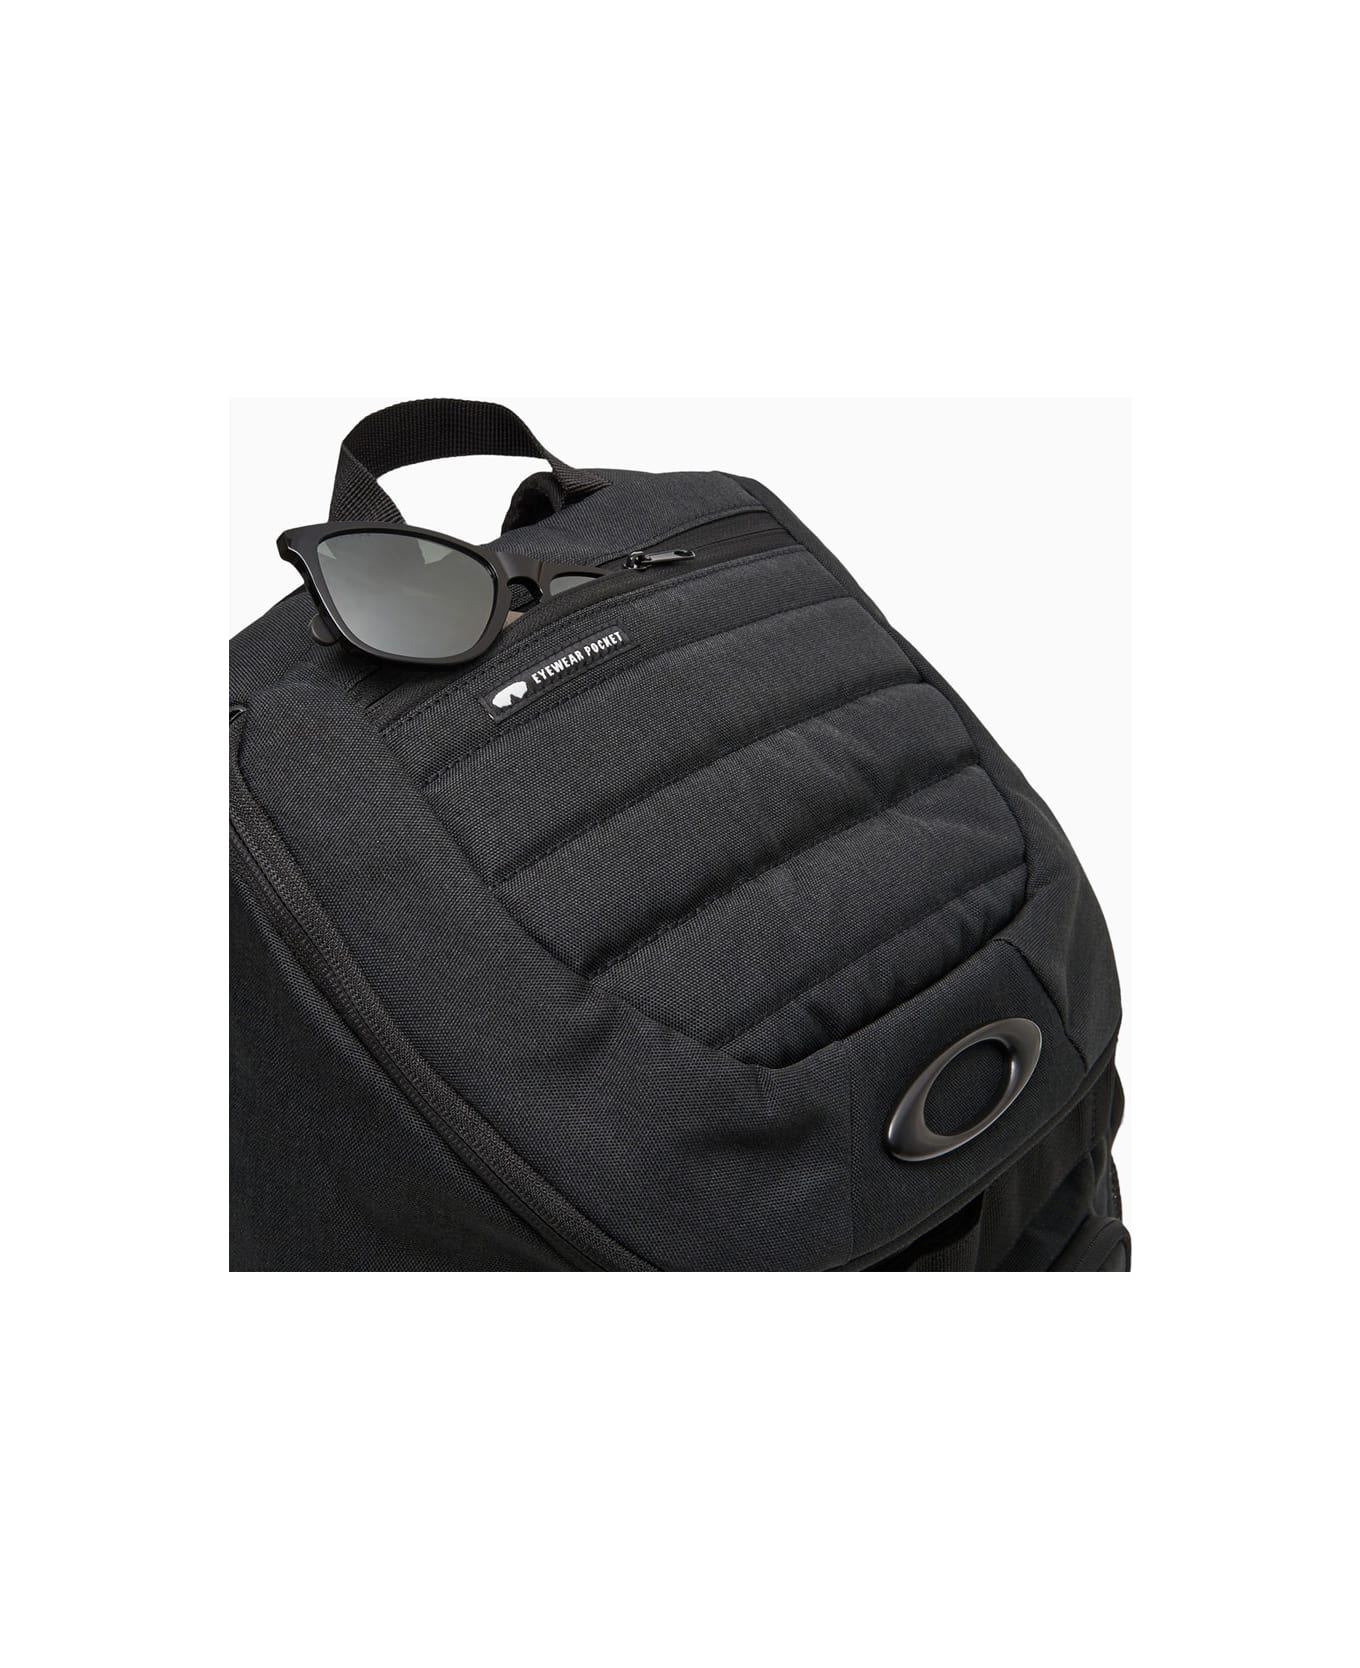 Oakley Enduro 3.0 Big Backpack バックパック